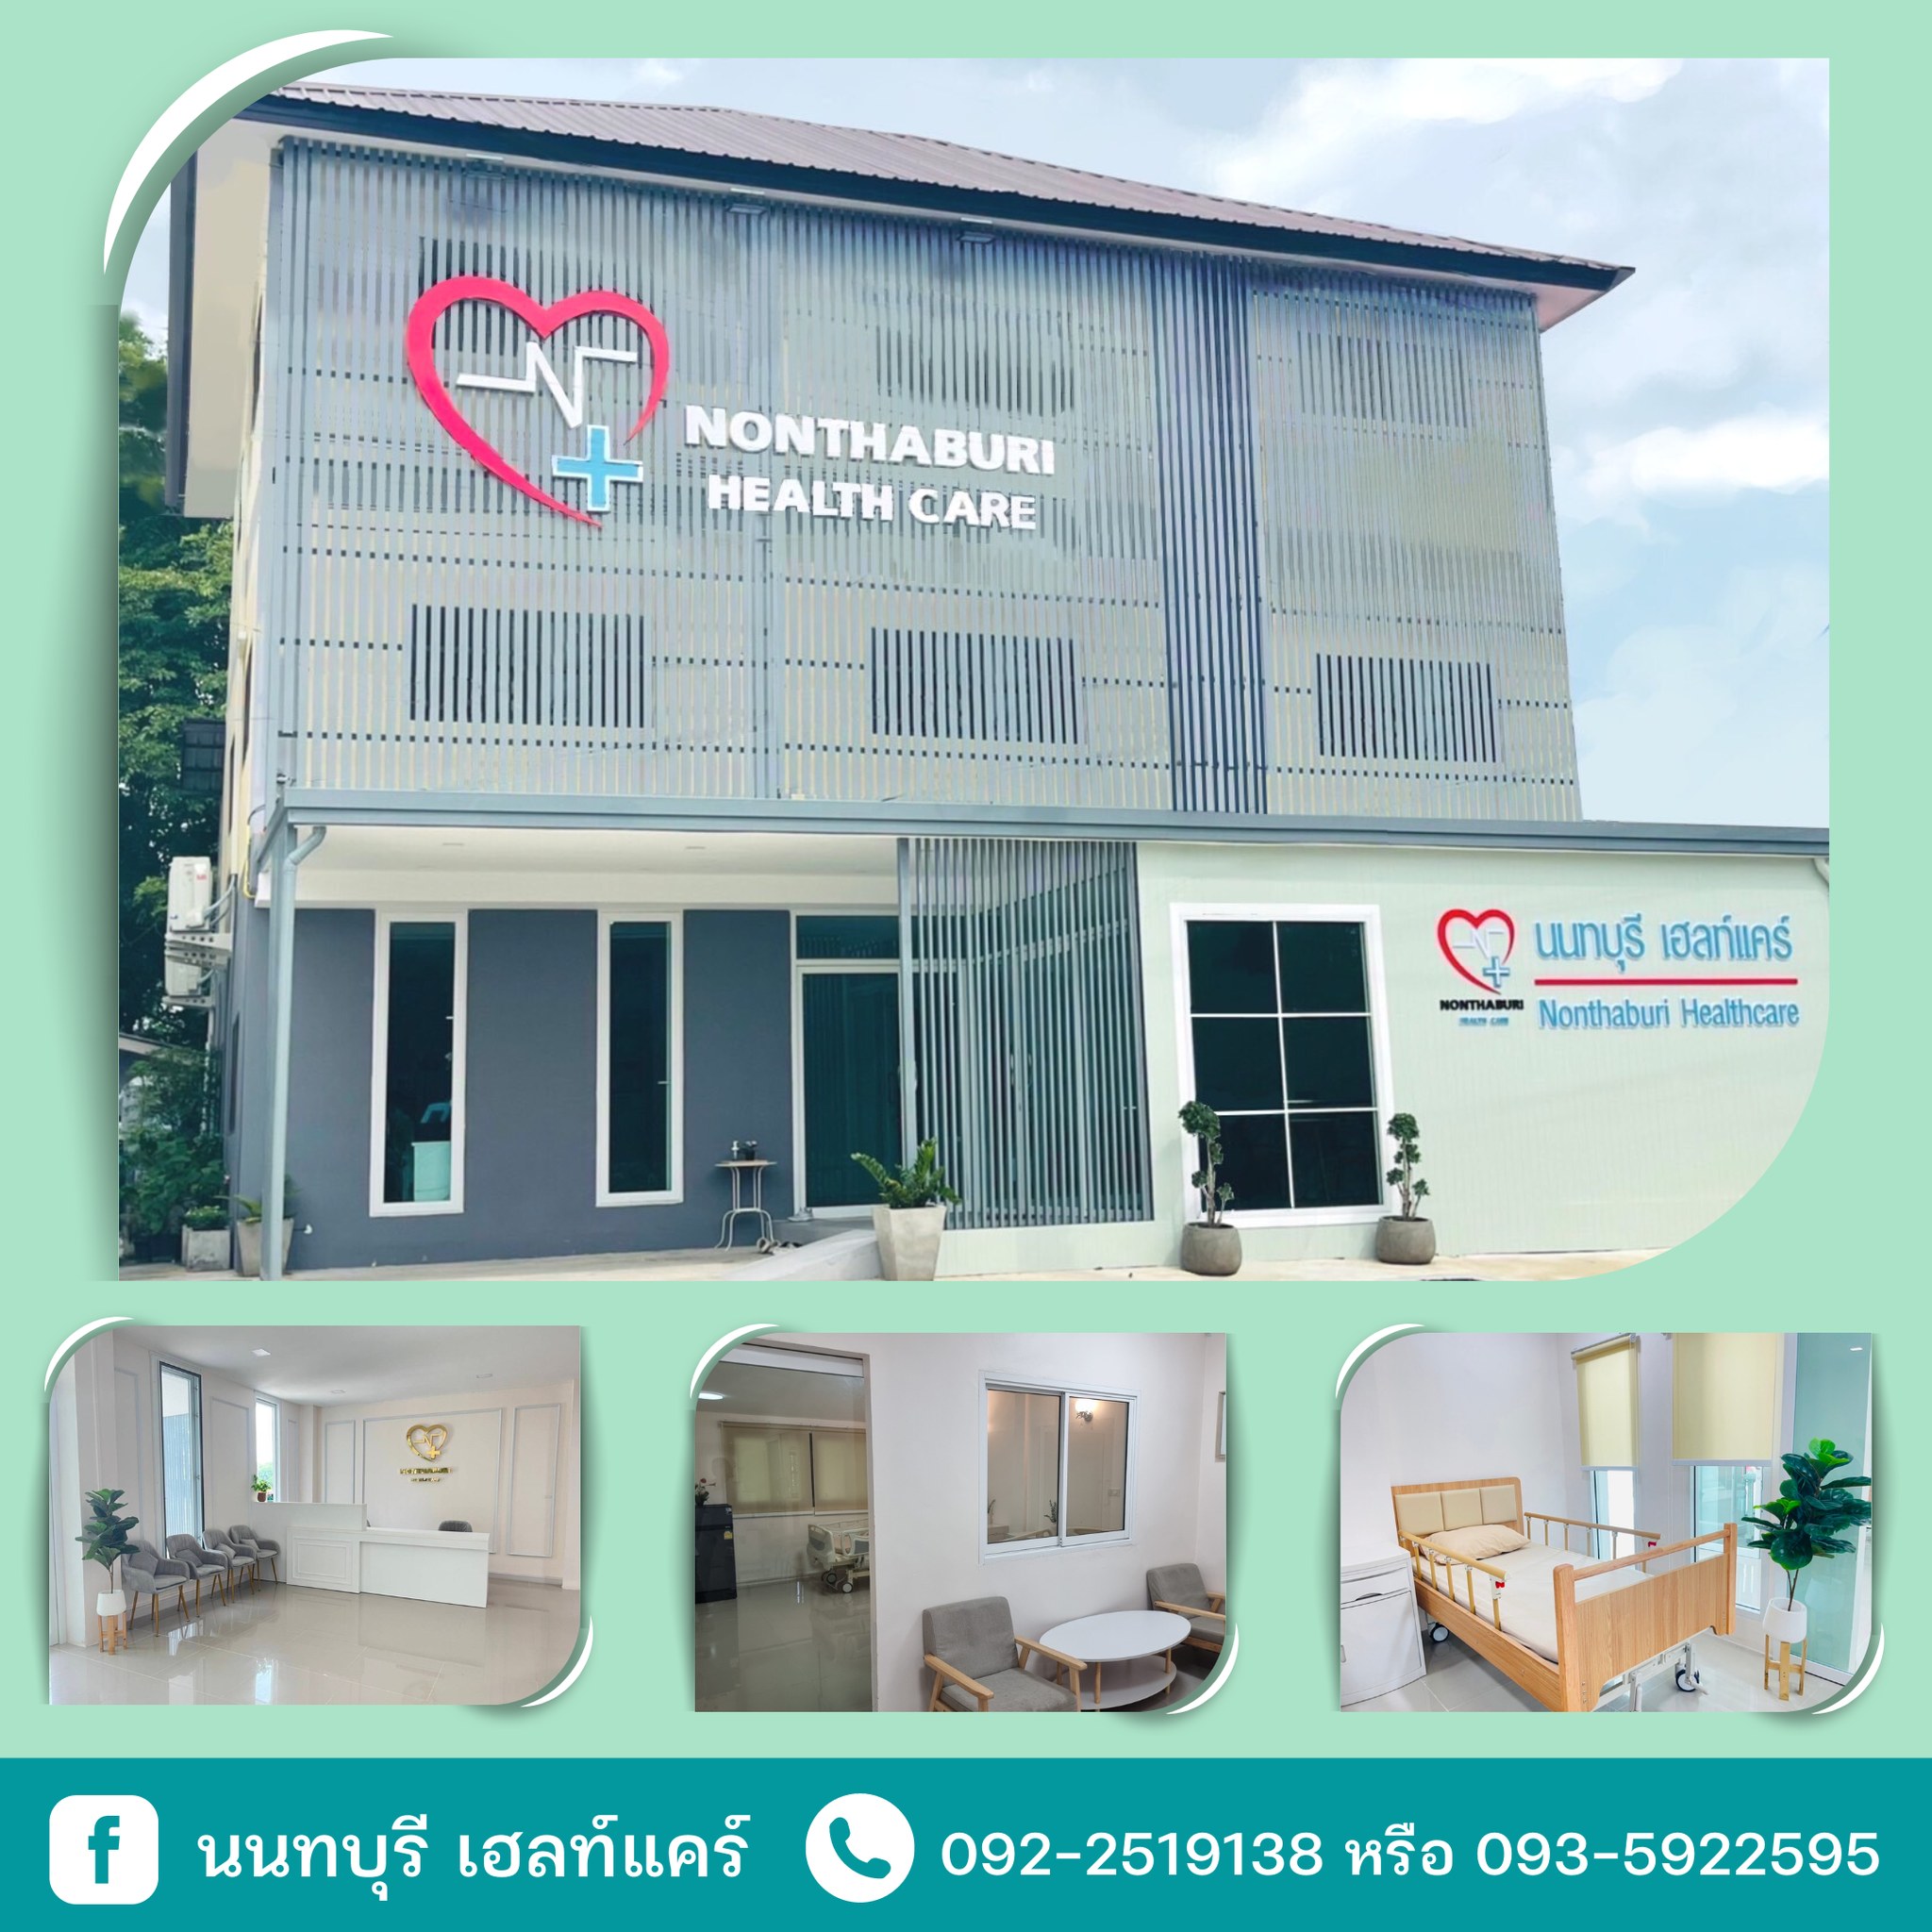 สถานพักฟื้น ผู้ป่วย Nursing Home, Nonthaburi Health Care , นนทบุรี เฮลท์แคร์